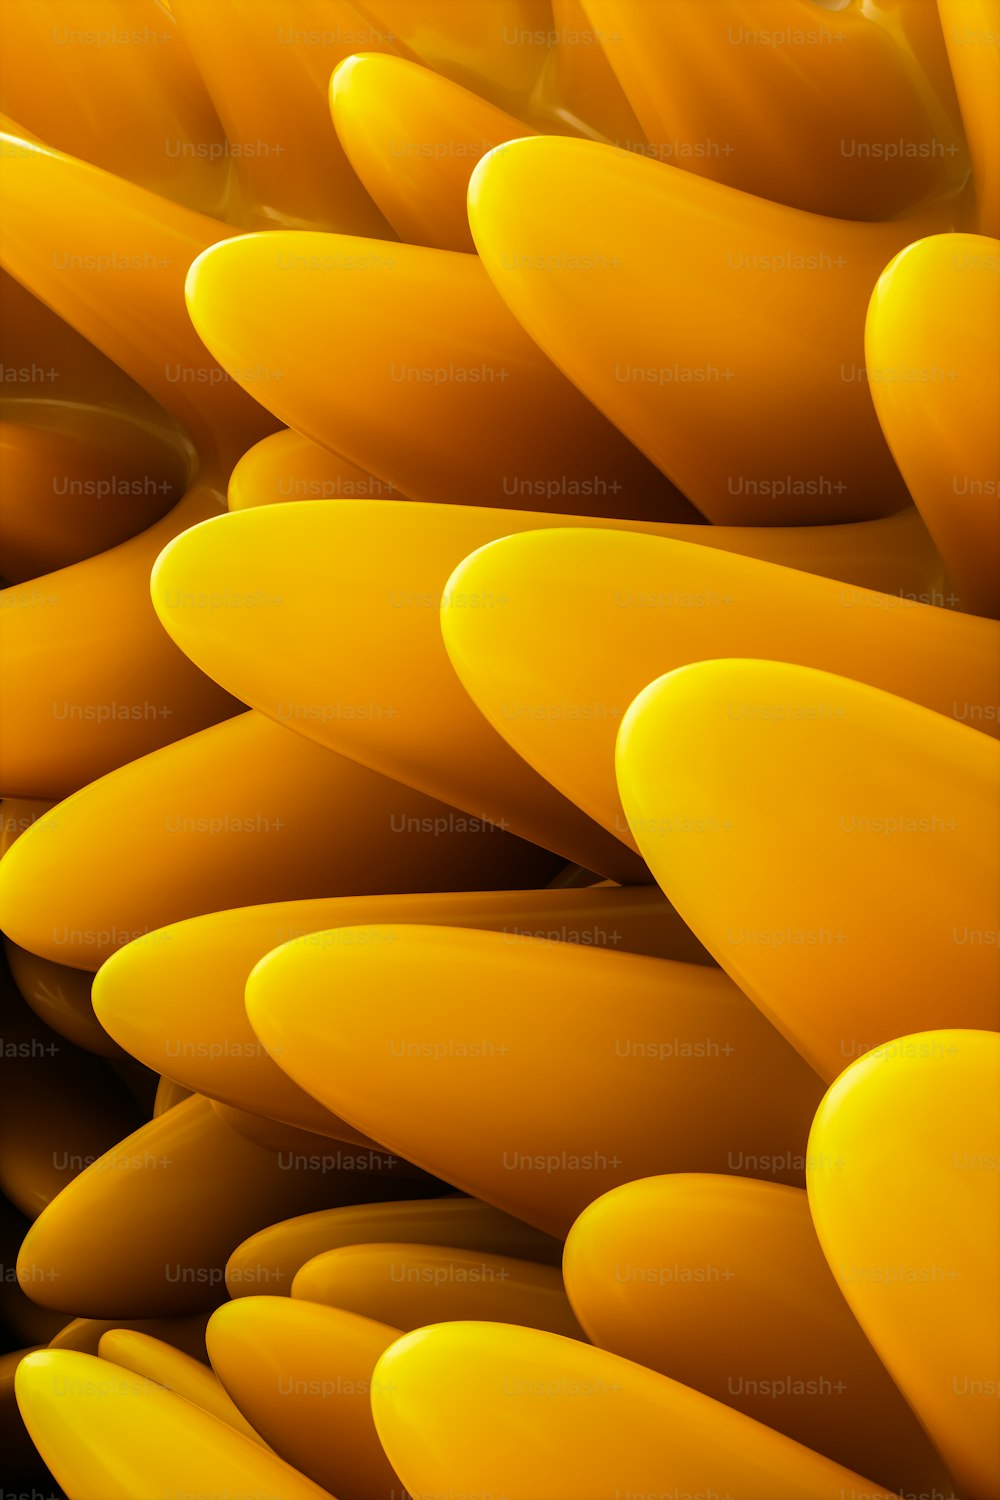 Un primo piano di un mazzo di banane gialle